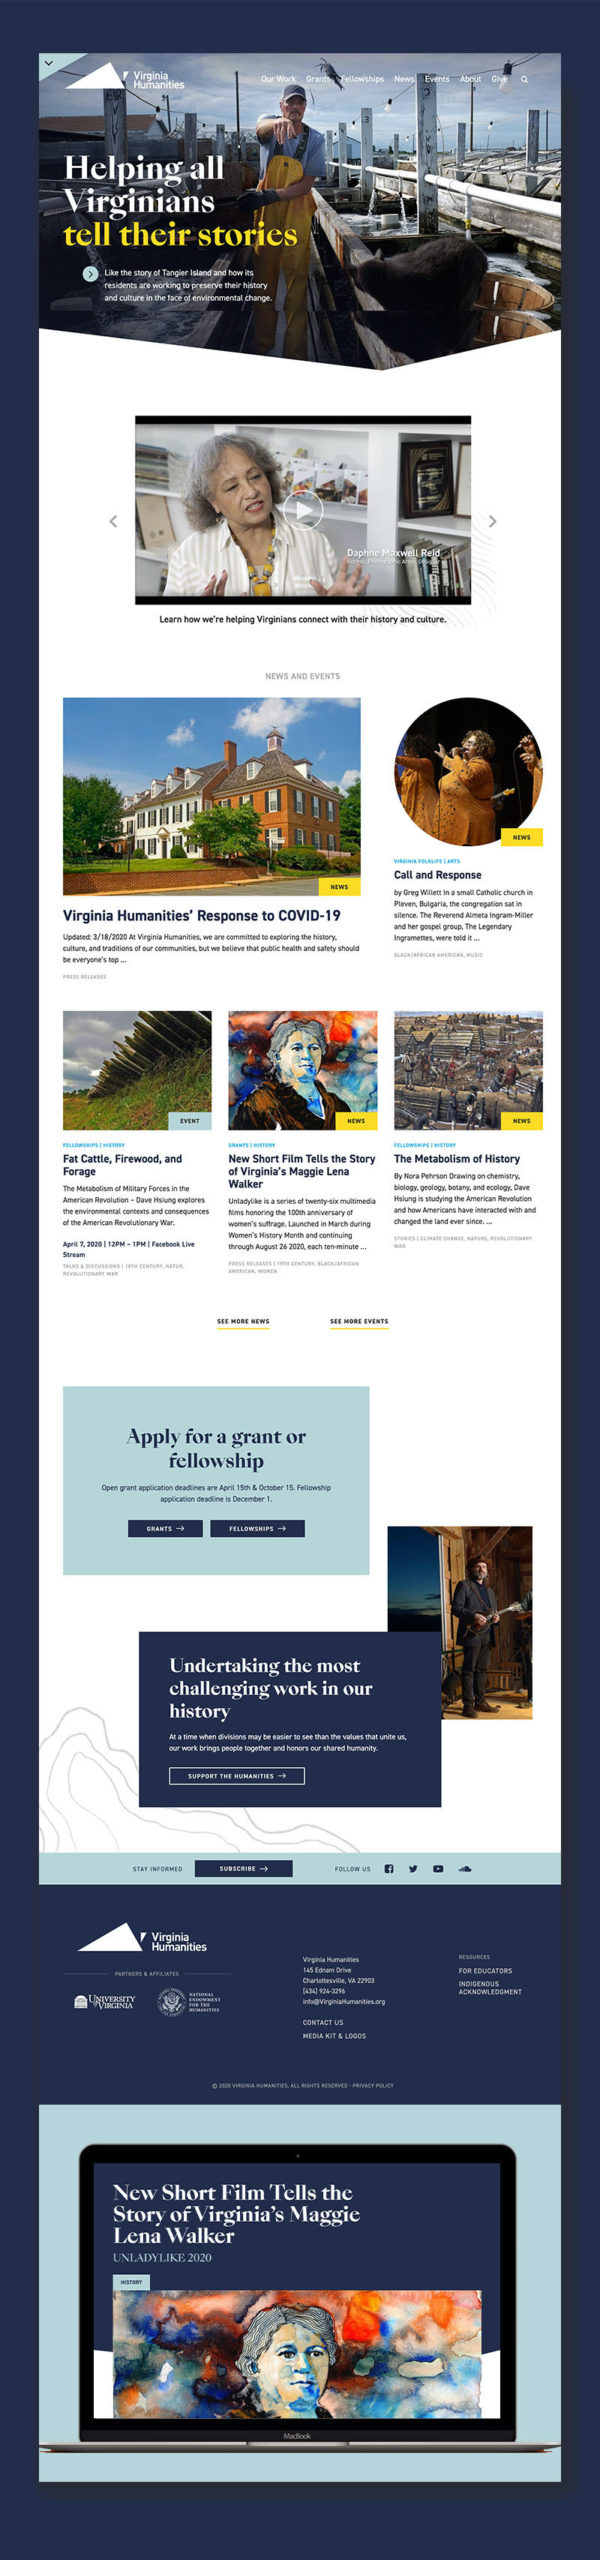 Virginia Humanities Web Design